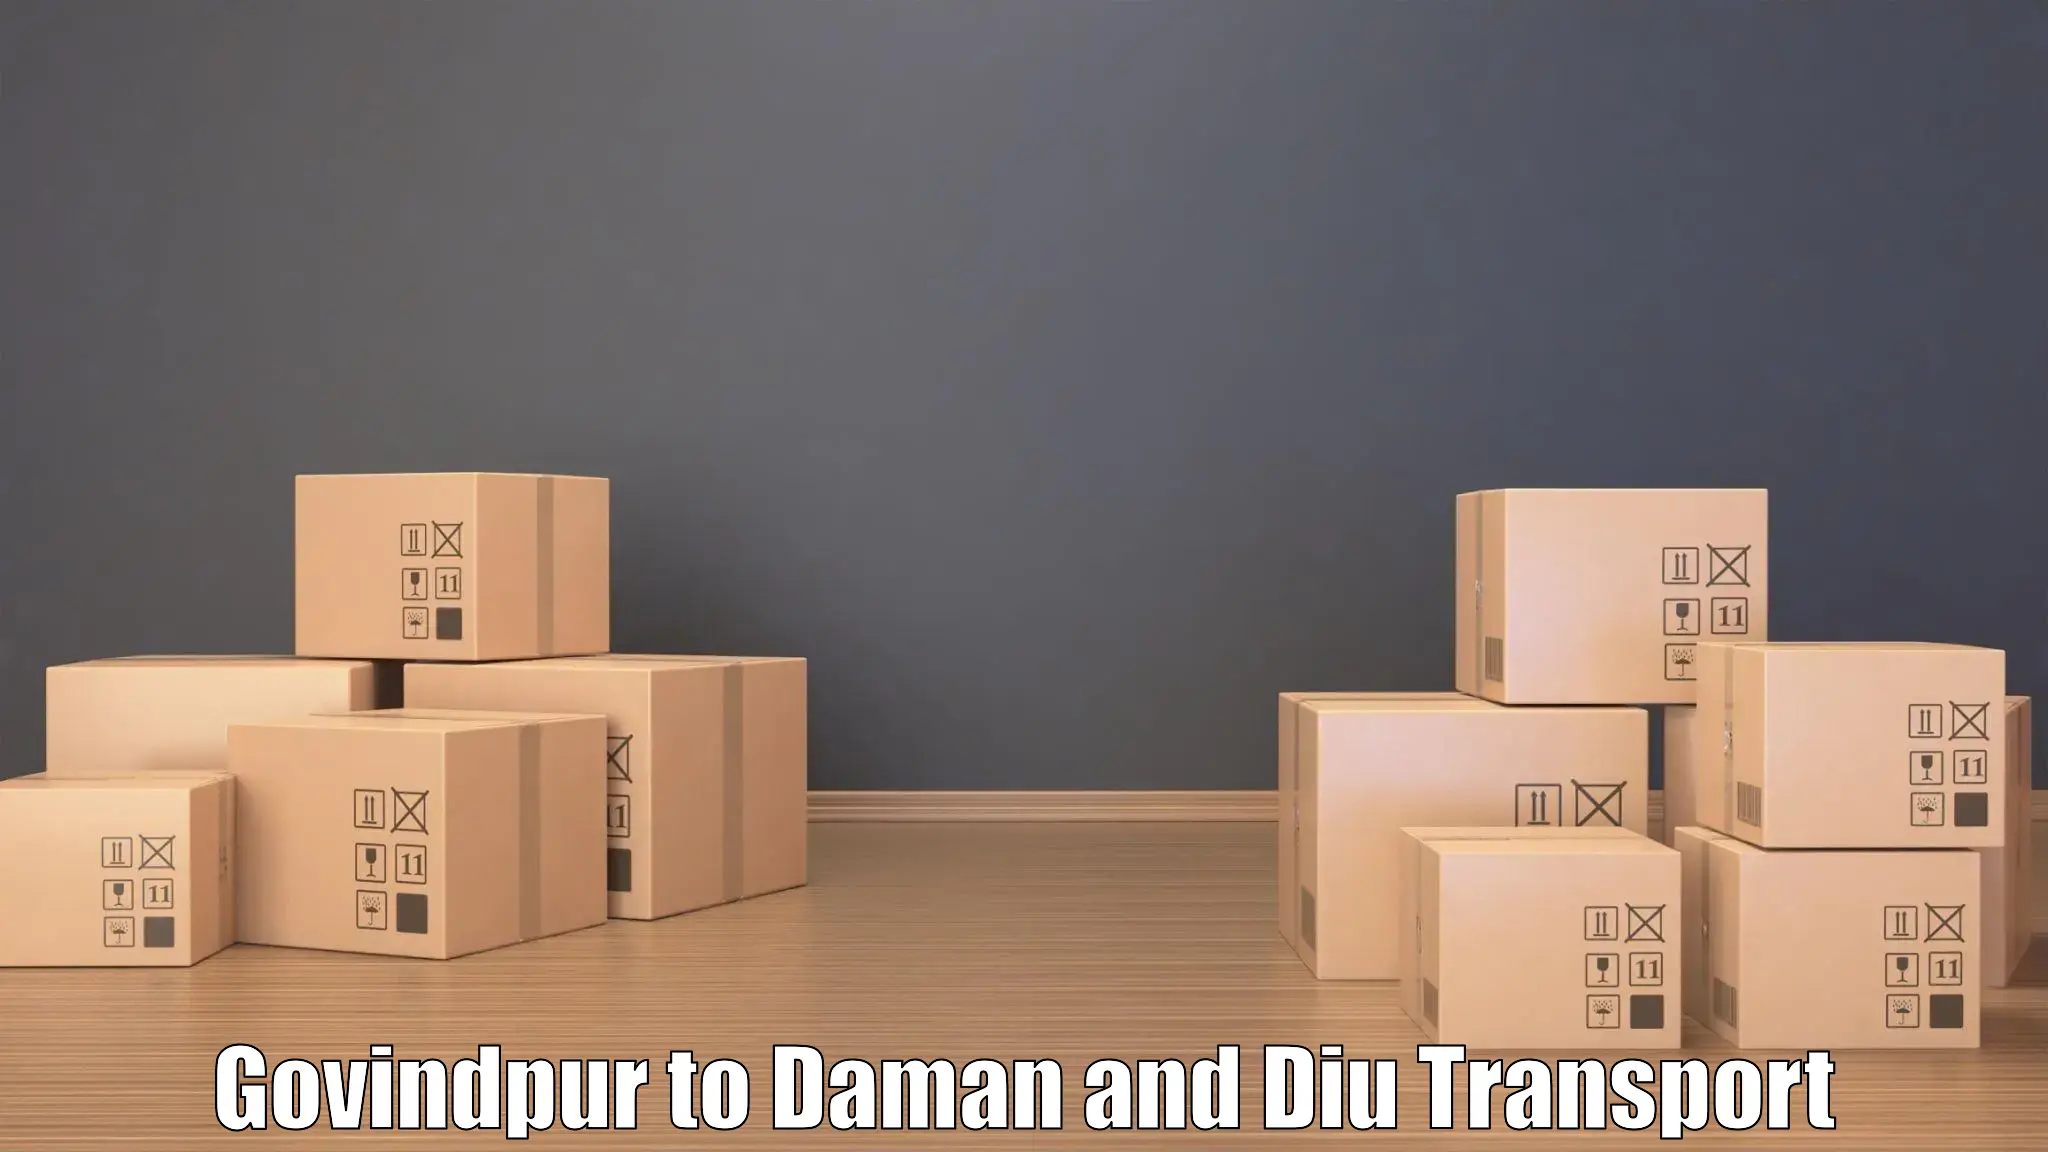 Road transport online services Govindpur to Daman